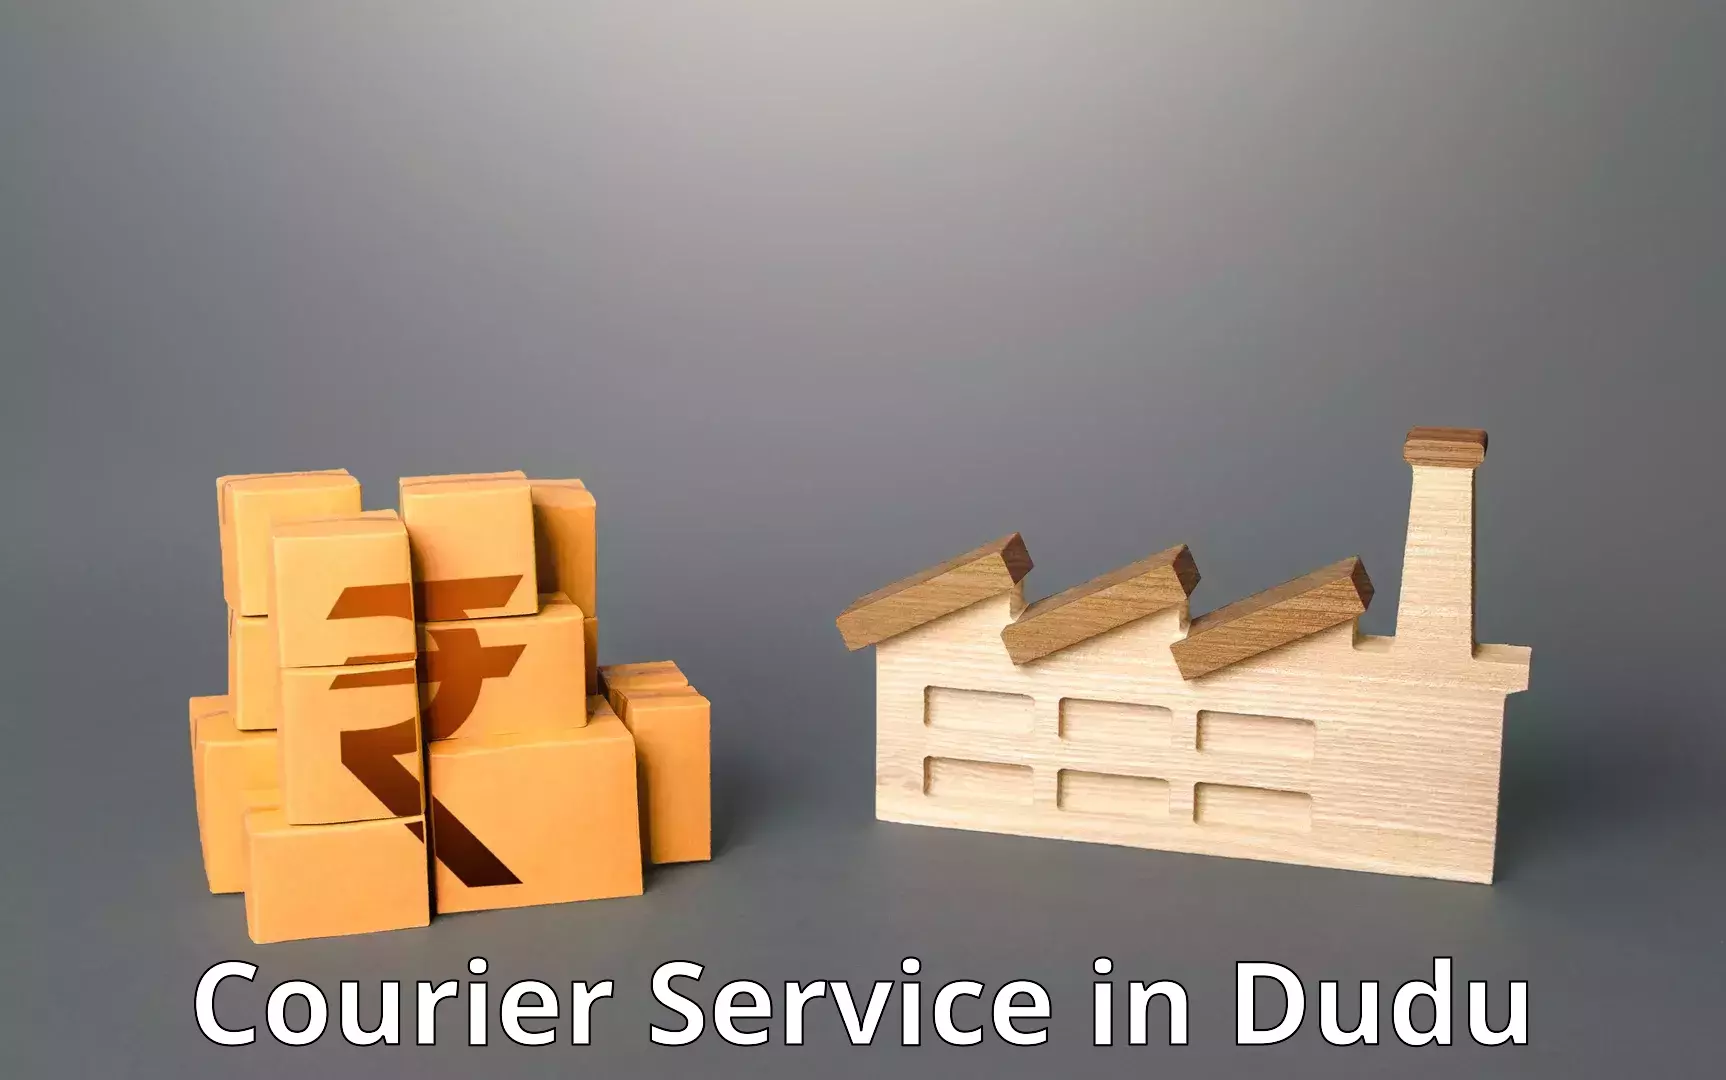 Quick dispatch service in Dudu